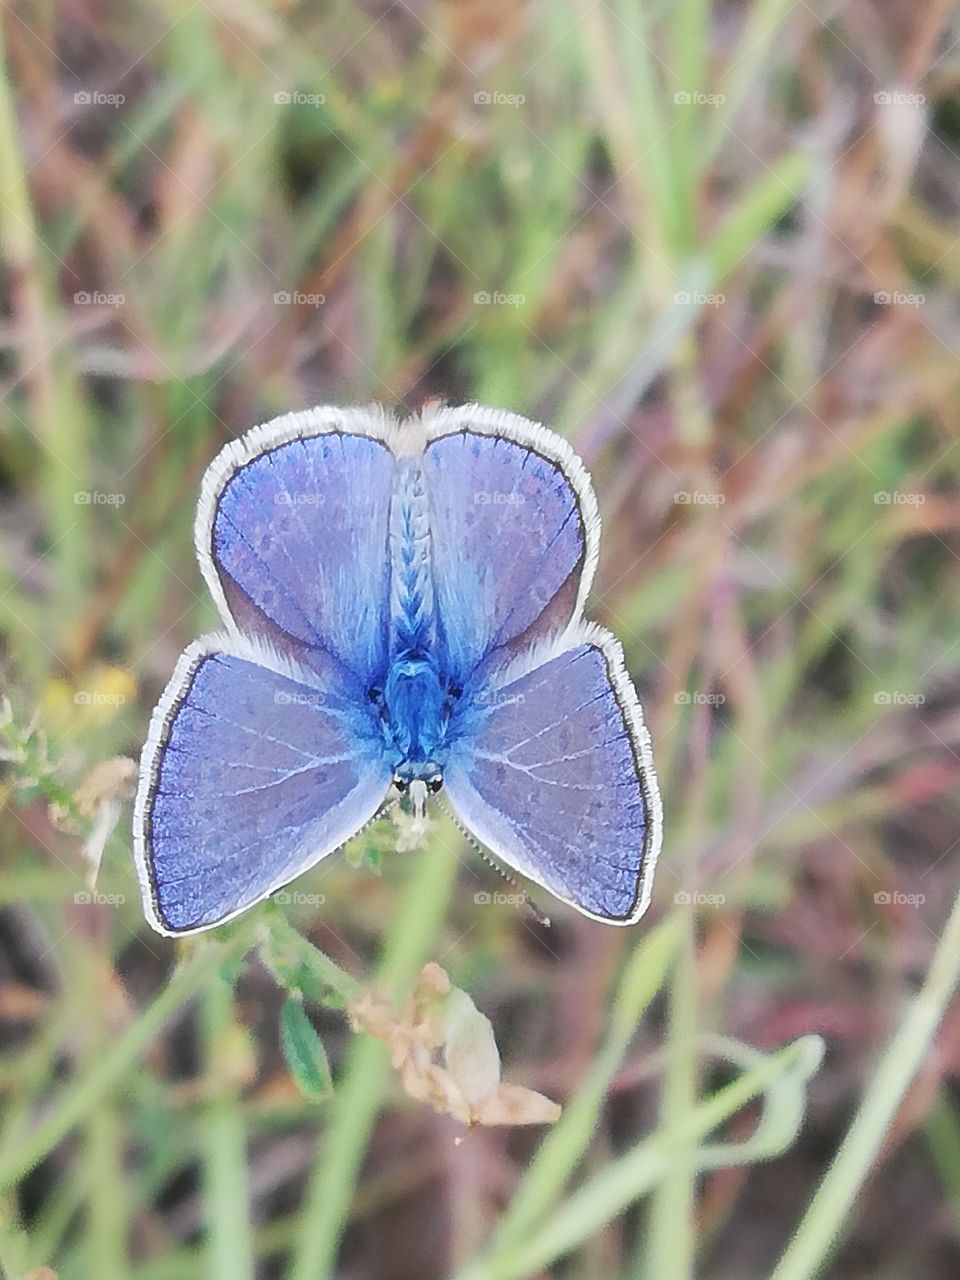 Little blue butterfly in a field